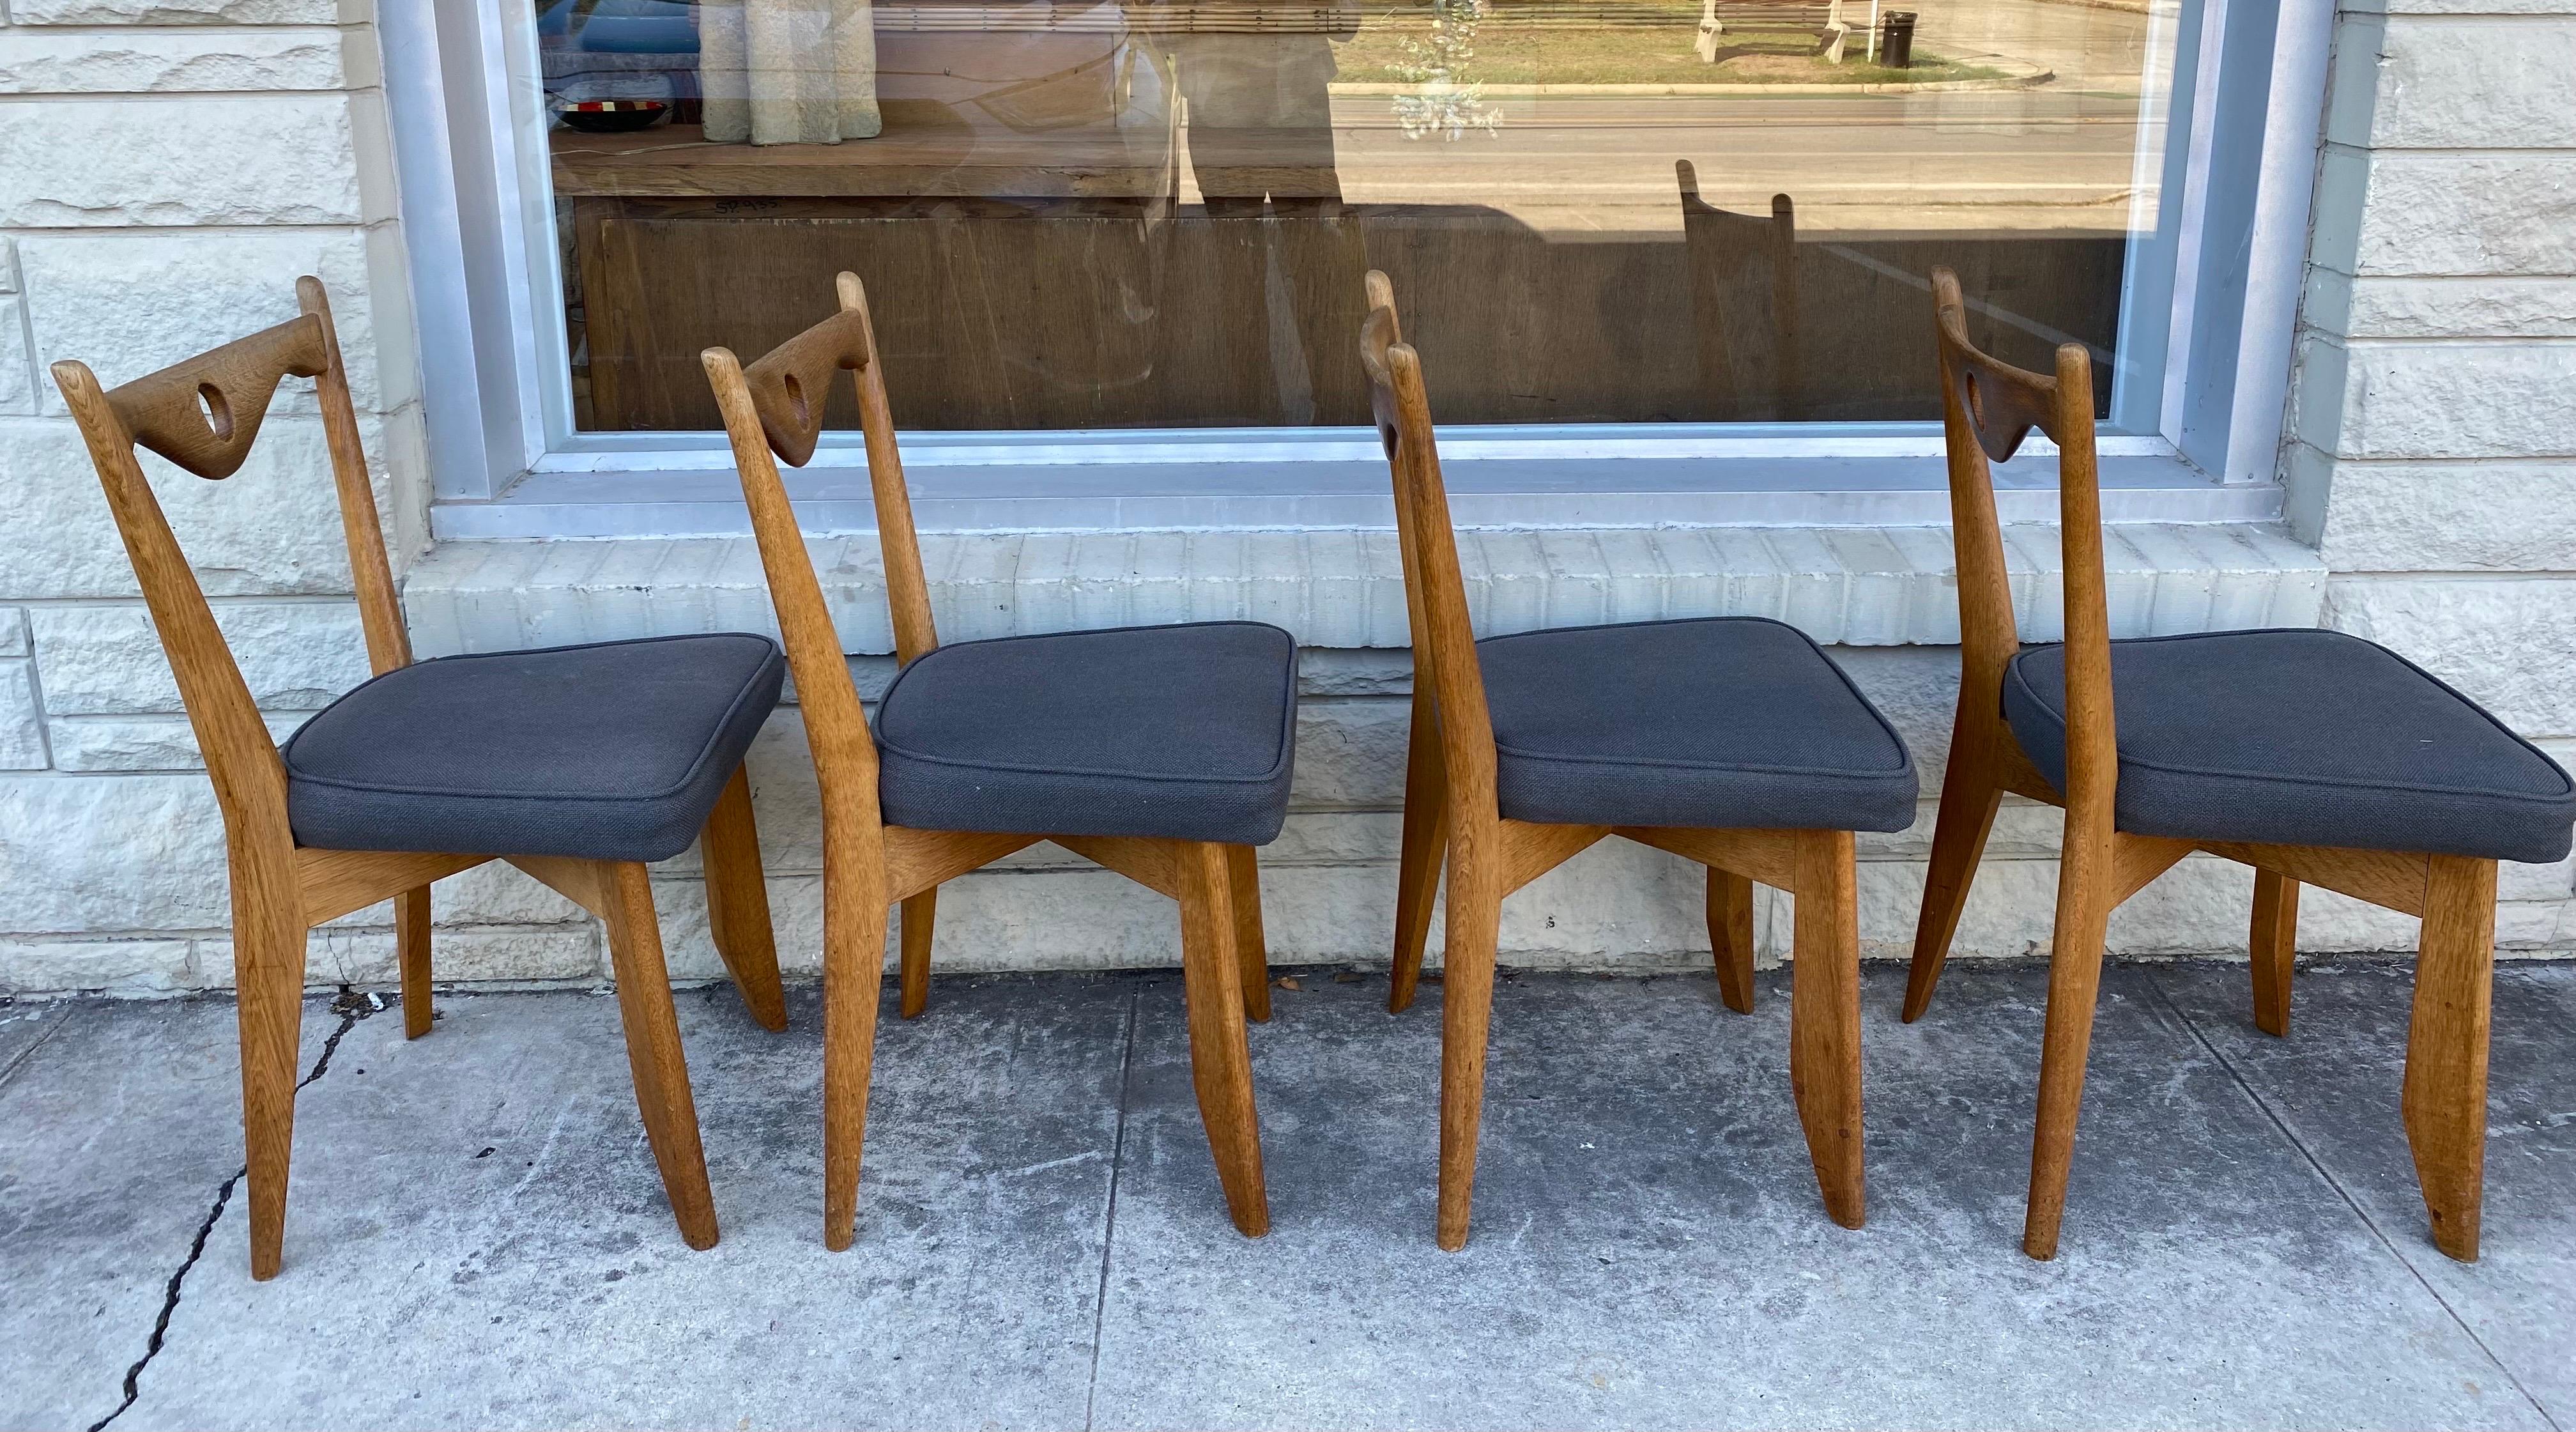 Ensemble de 4 chaises de salle à manger Guillerme et Chambron en chêne massif avec revêtement en tissu gris, circa 1960, France. 
Dimensions : 17 